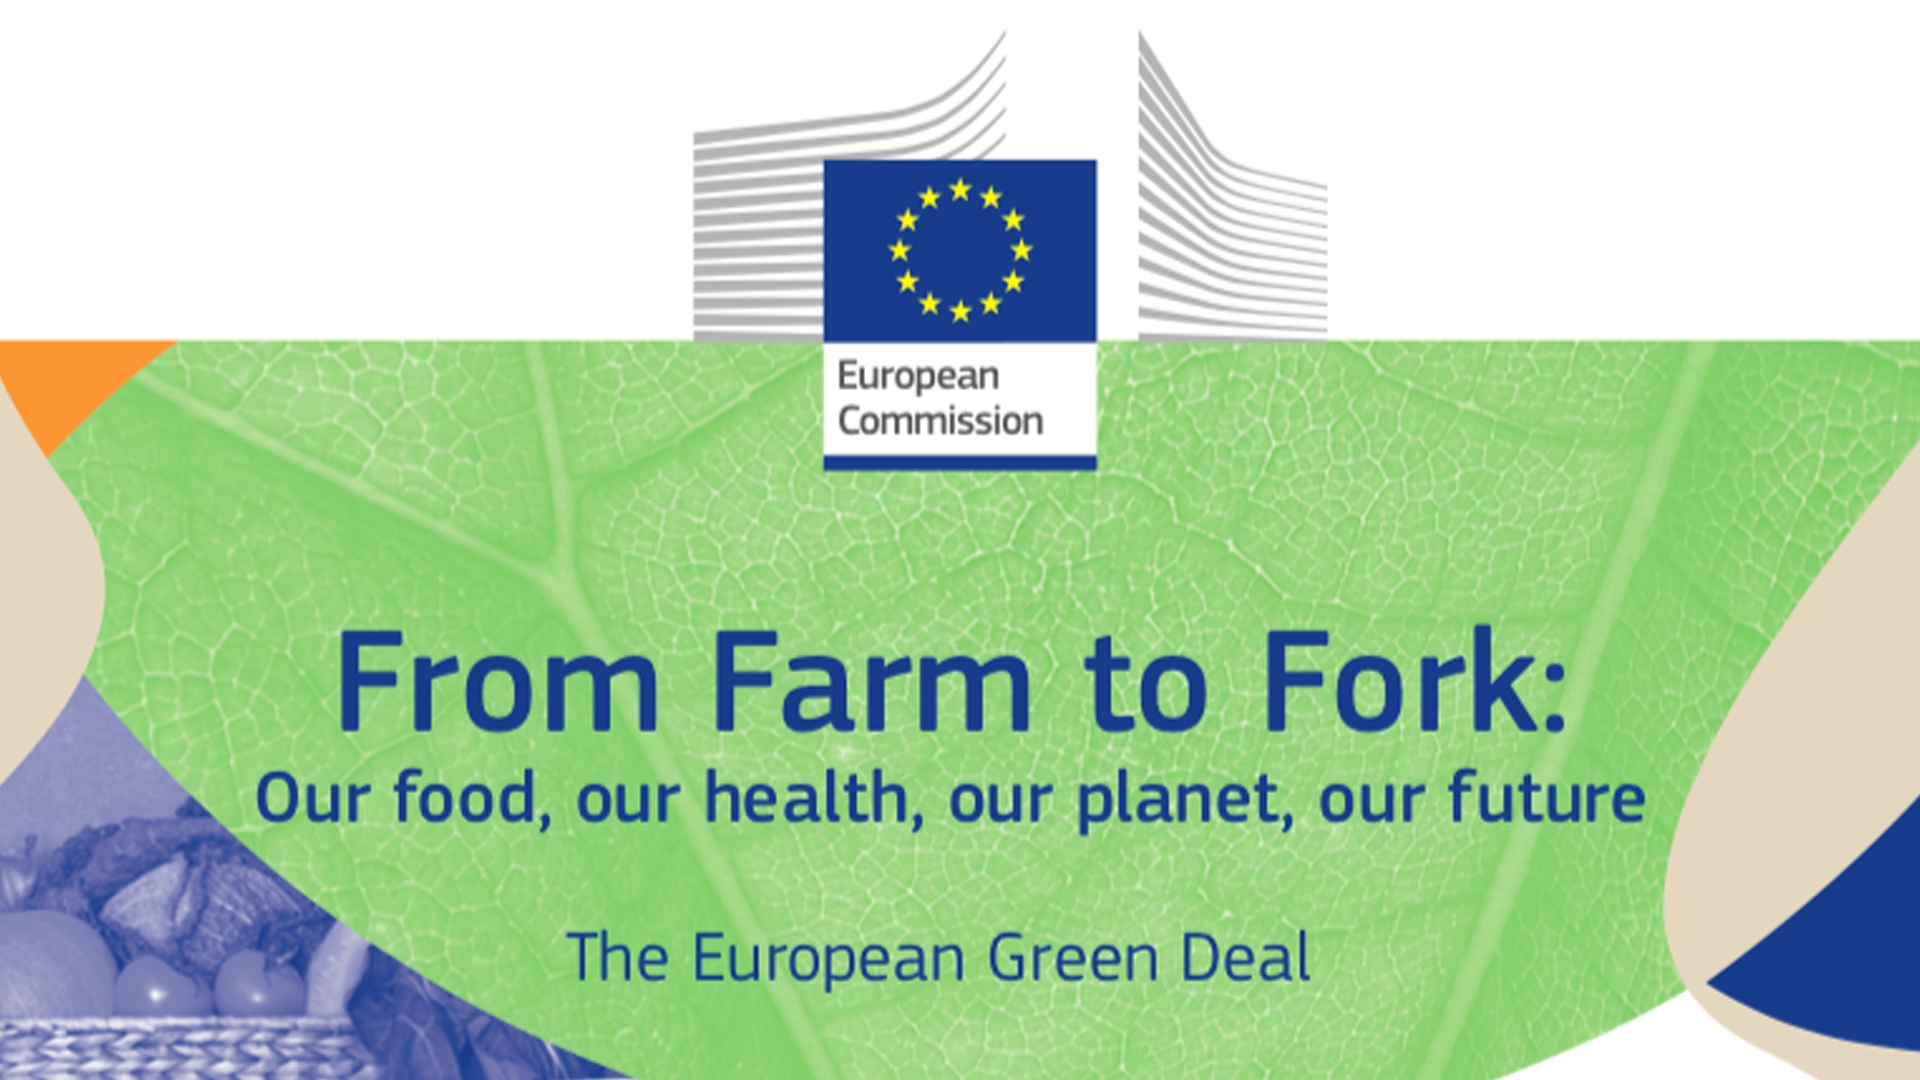 La strategia Farm to fork: dal produttore al consumatore